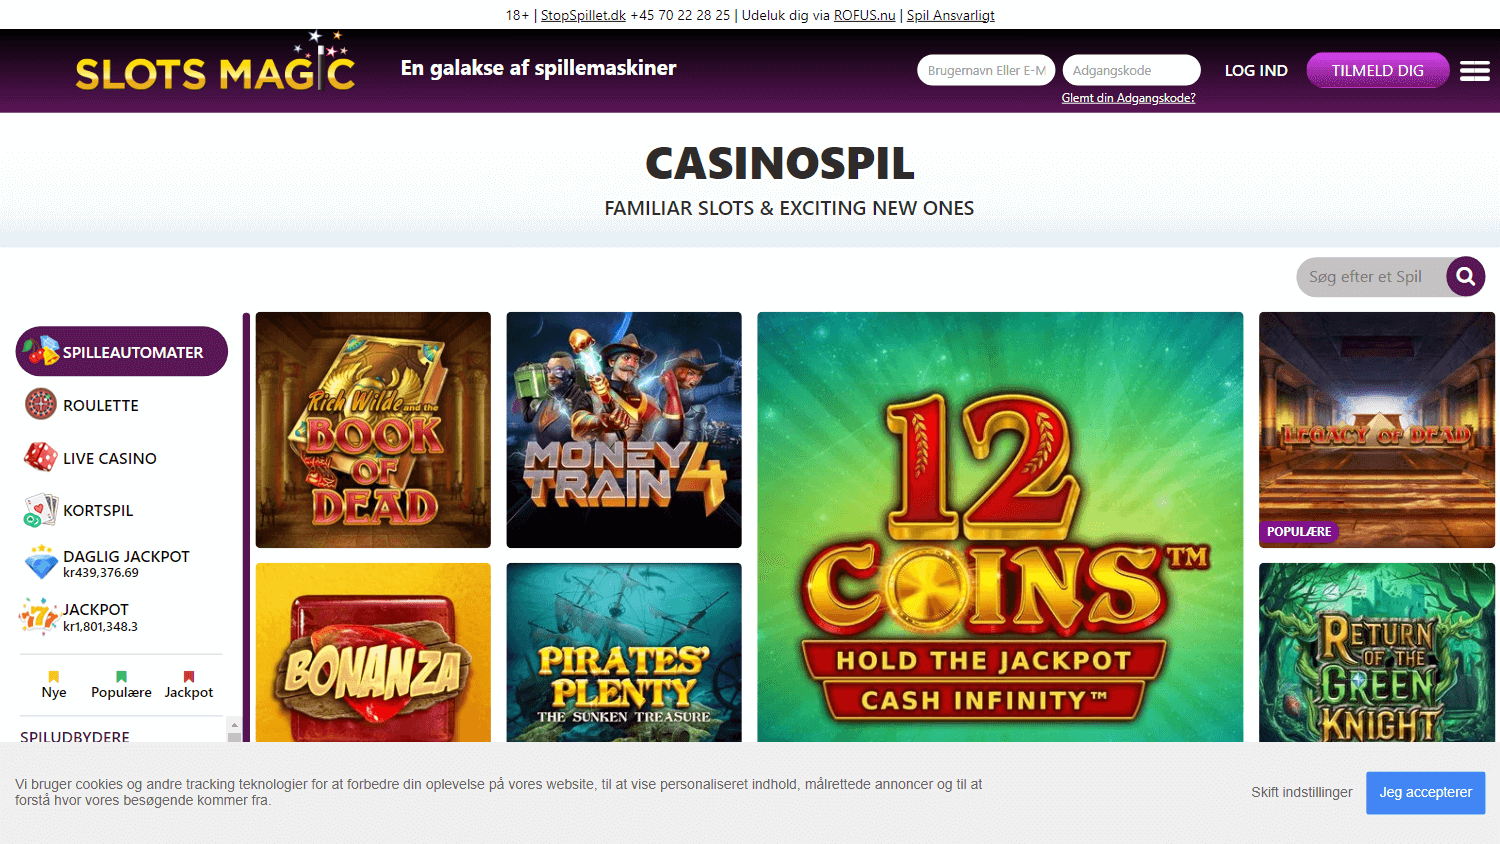 slots_magic_casino_dk_game_gallery_desktop